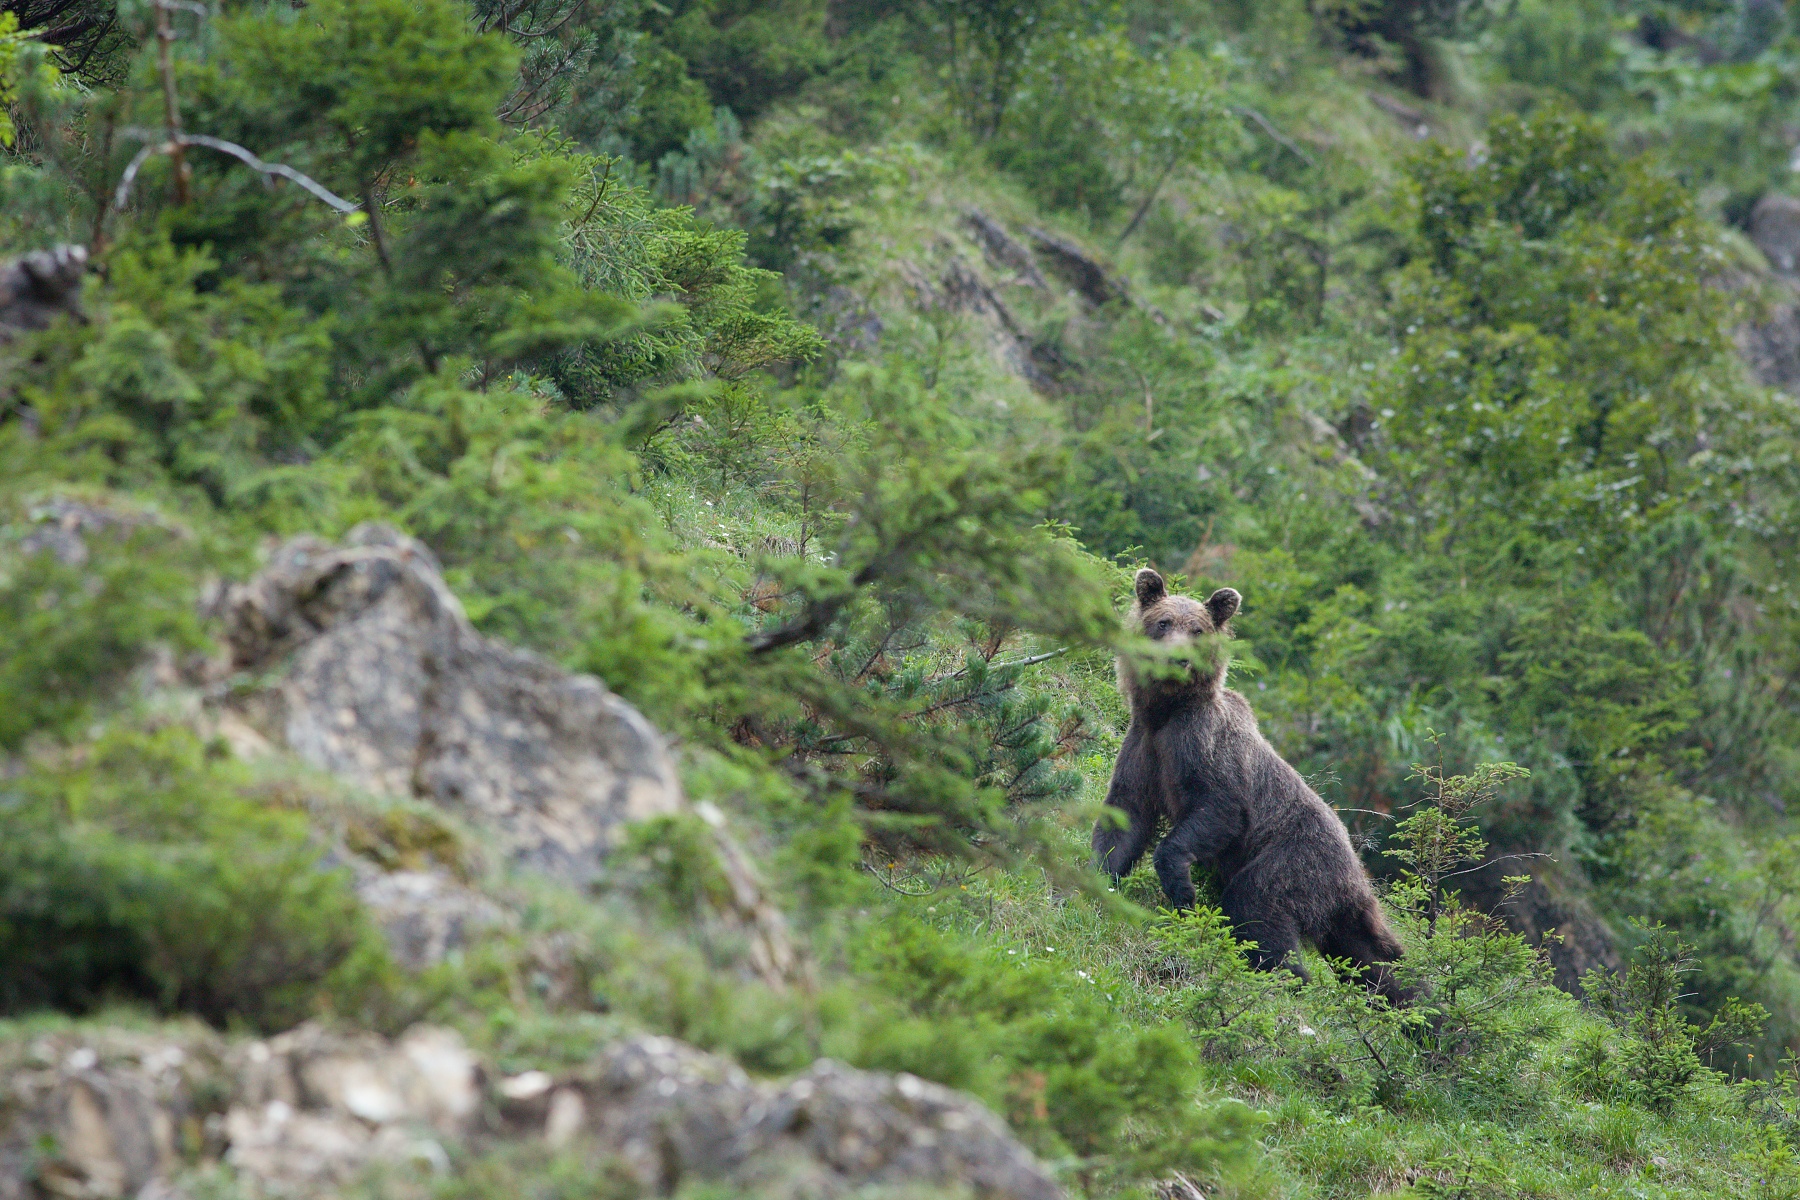 medveď hnedý (Ursus arctos) Brown bear, Valea Arpasului, Munții Făgăraș, Romania Canon EOS 5D mark III, Canon 400 mm f5.6 L USM, f6.3, 1/125, ISO 2000, 31. august 2018